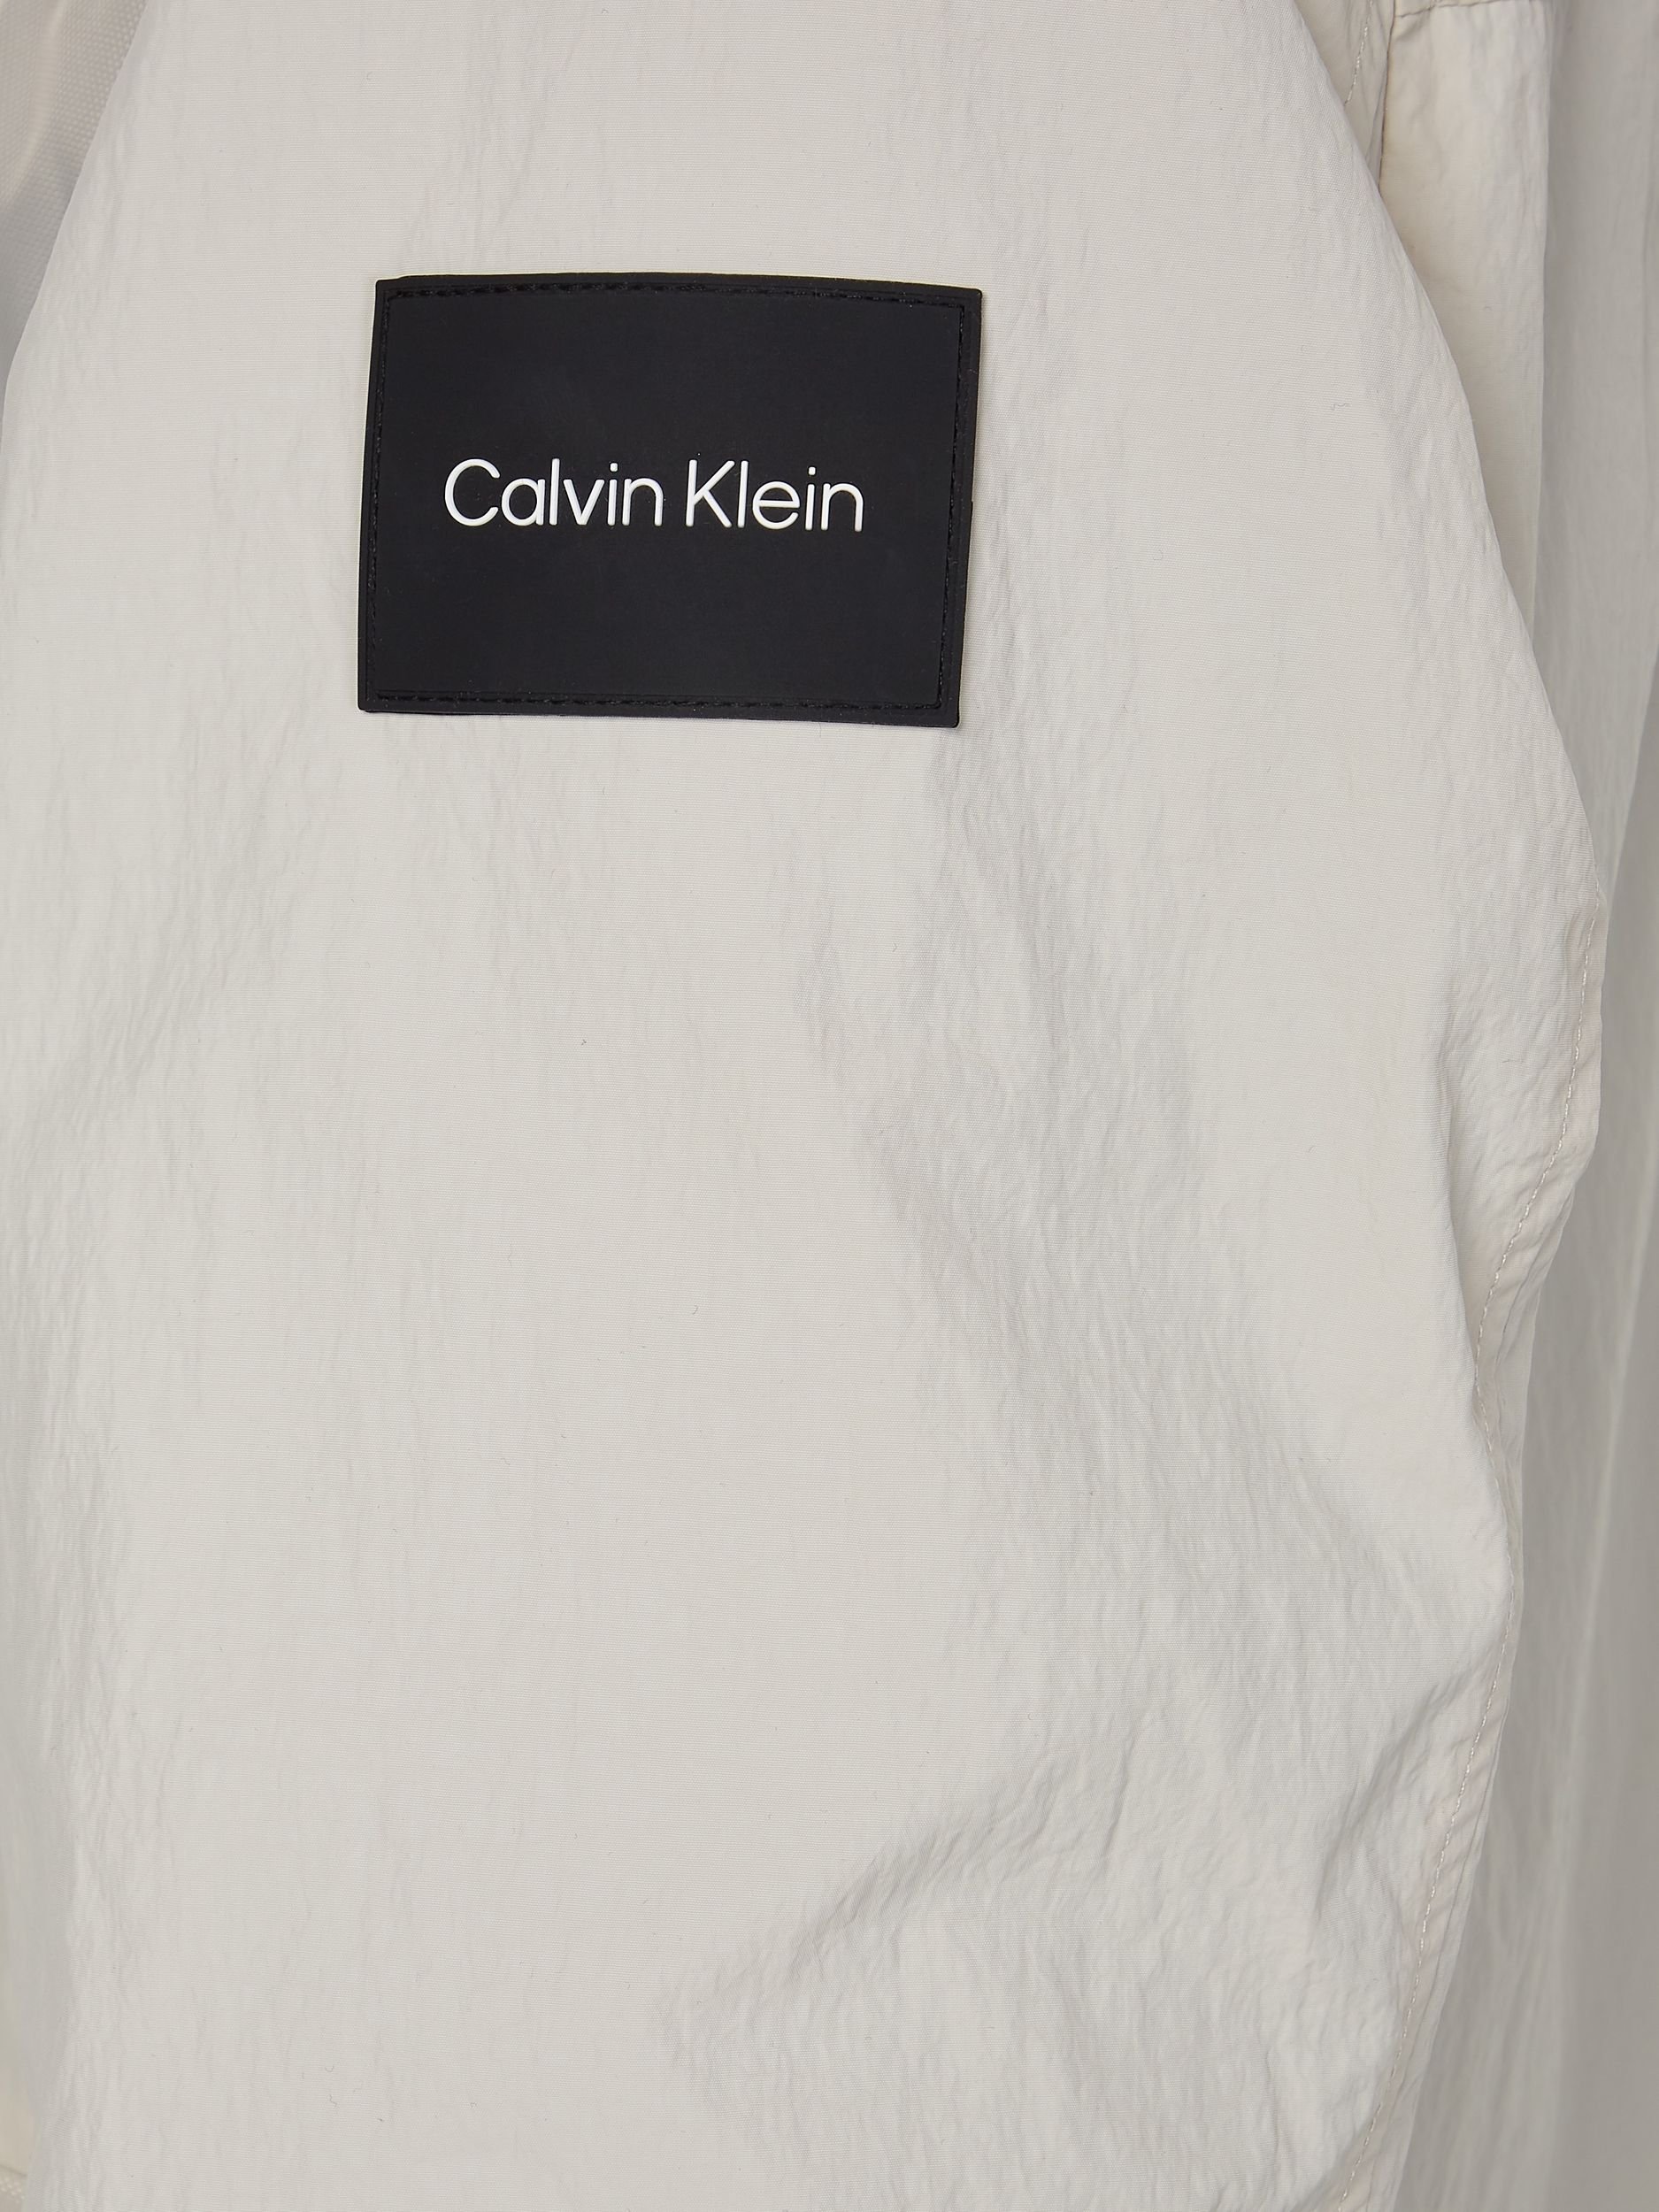 Calvin Klein Menswear (PVH Group) Blouson 